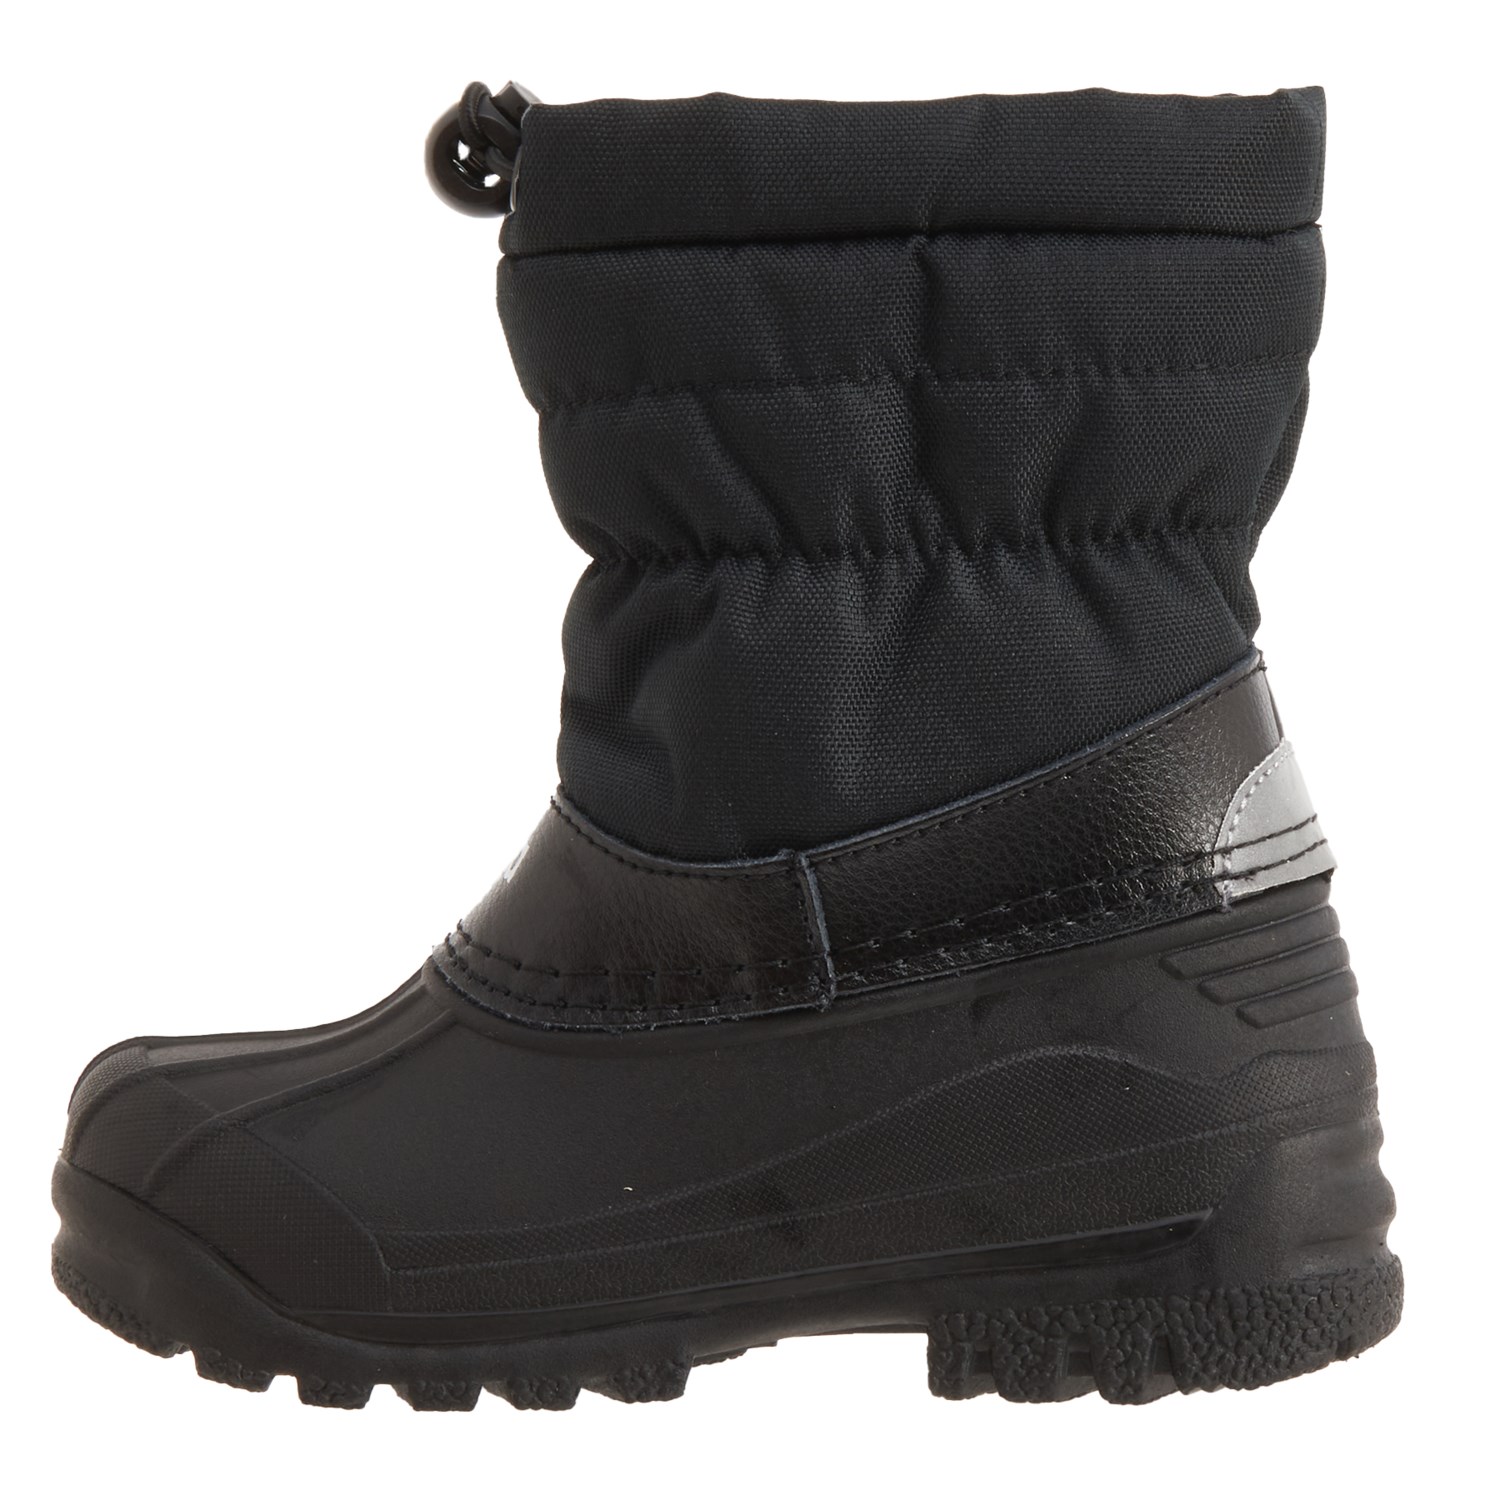 Reima Water Resistant Winter Boots - Nefar Pink/Navy